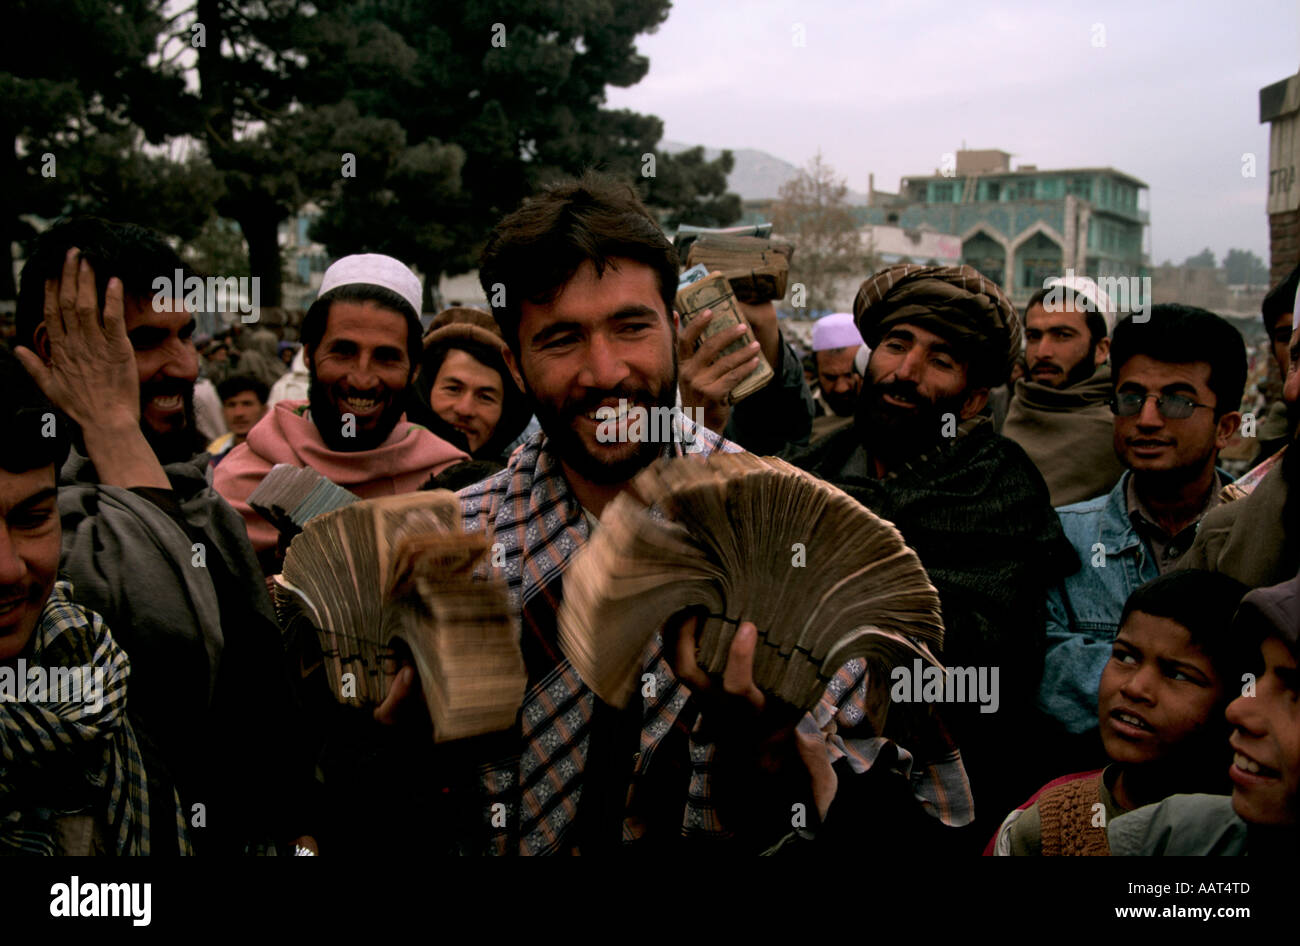 La rinascita di una nazione CAMBIAMONETE CON UN FASCIO DI AFGANI LA MONETA UFFICIALE DI 33 000 afghani a 1 dollaro USA. 2001 Foto Stock